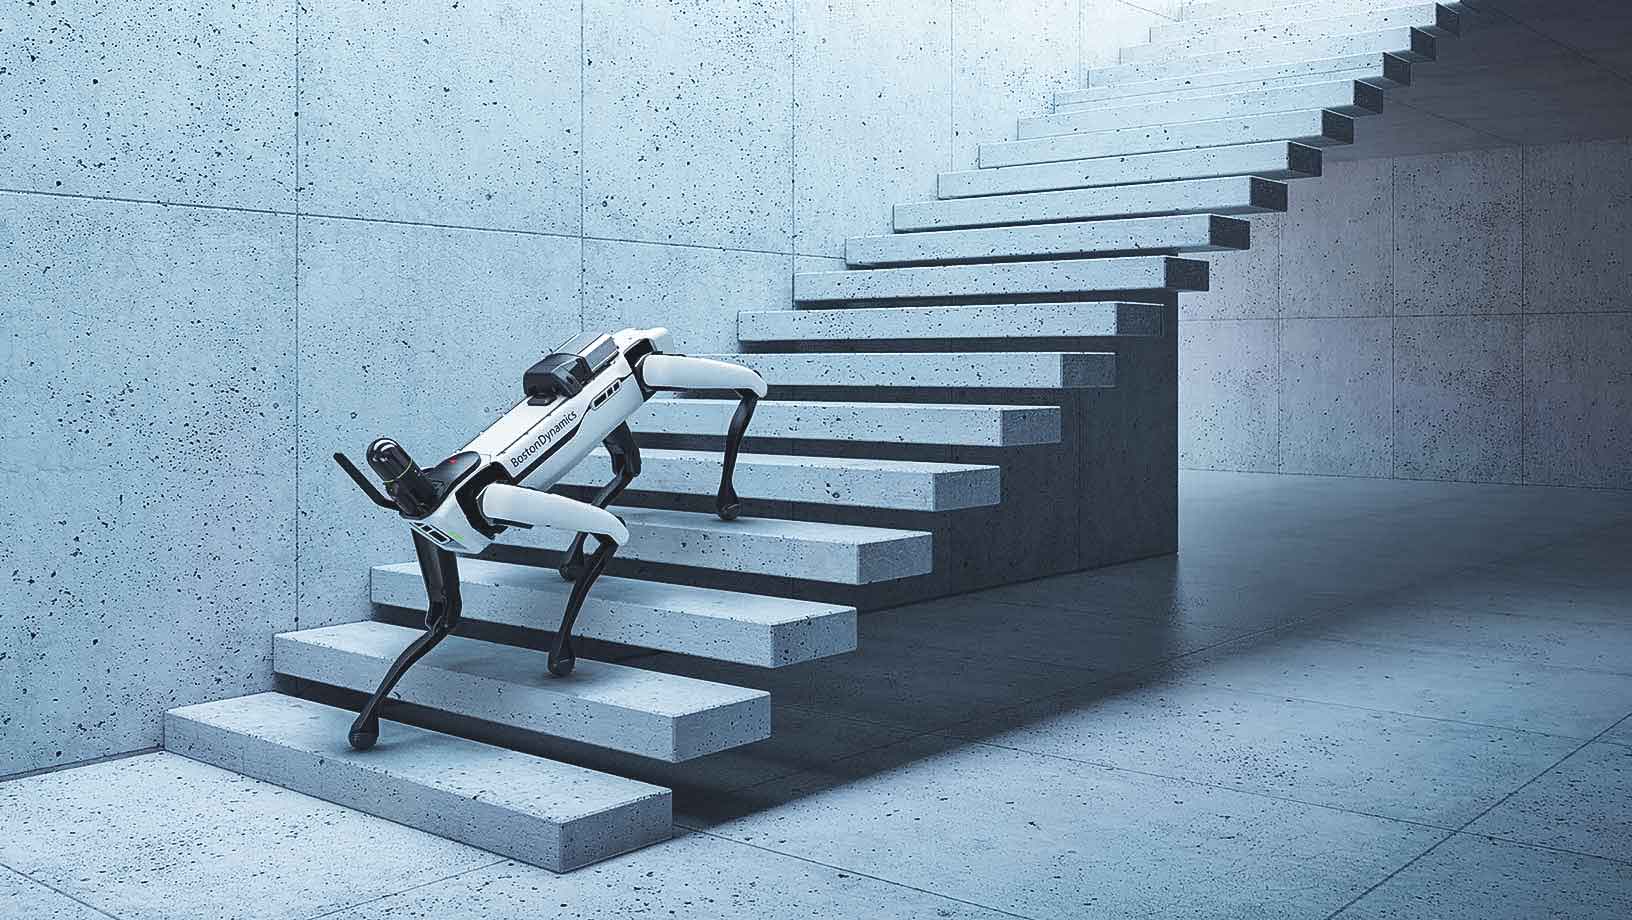 Der SPOT-Roboter von Boston Dynamics bewältigt mit der BLK ARC Roboterintegration von Hexagon eine Treppe